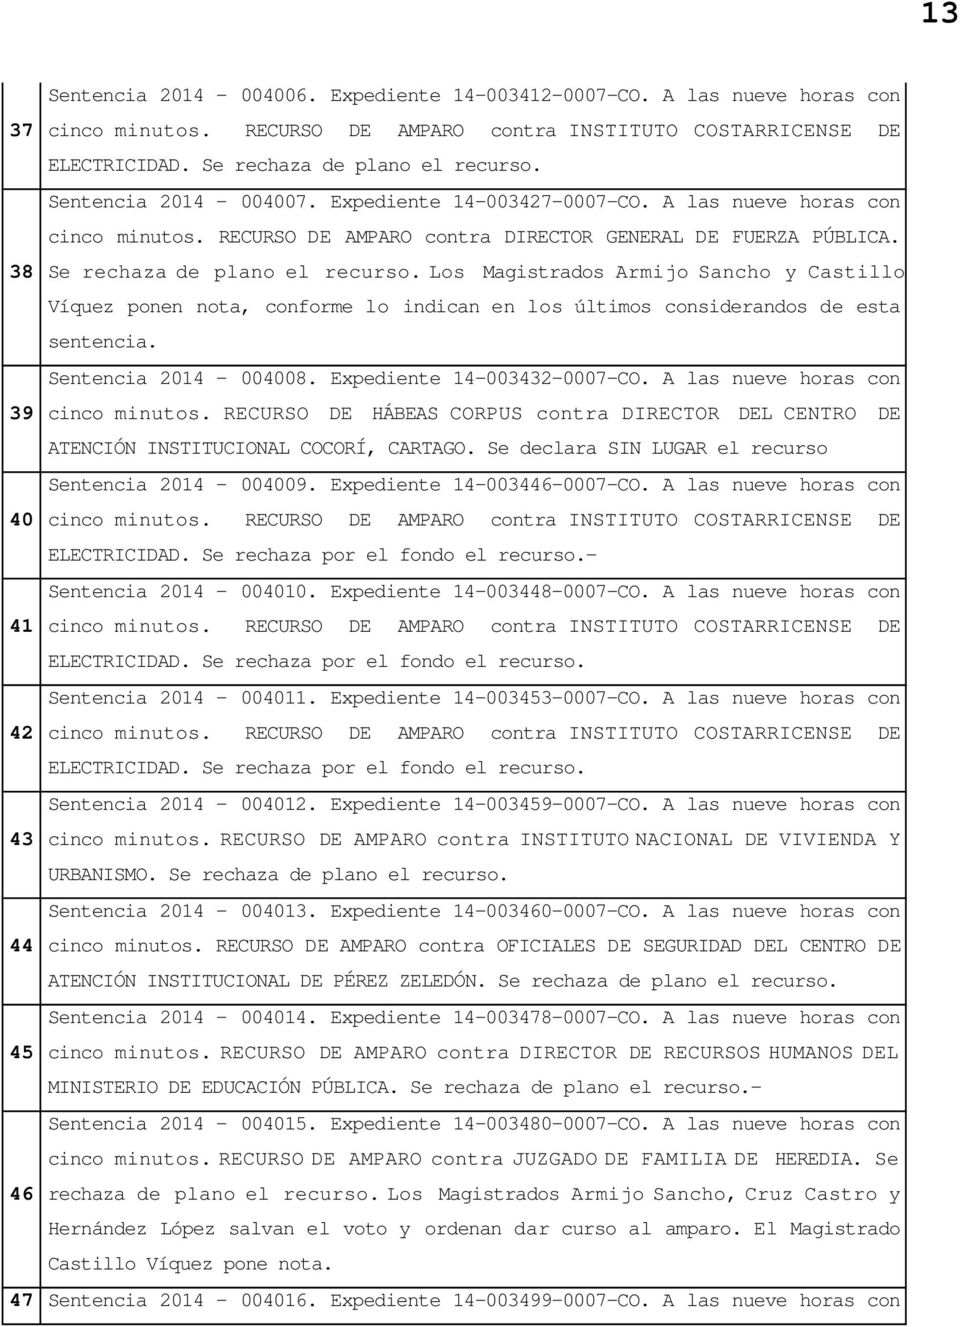 Los Magistrados Armijo Sancho y Castillo Víquez ponen nota, conforme lo indican en los últimos considerandos de esta sentencia. Sentencia 2014-004008. Expediente 14-003432-0007-CO.